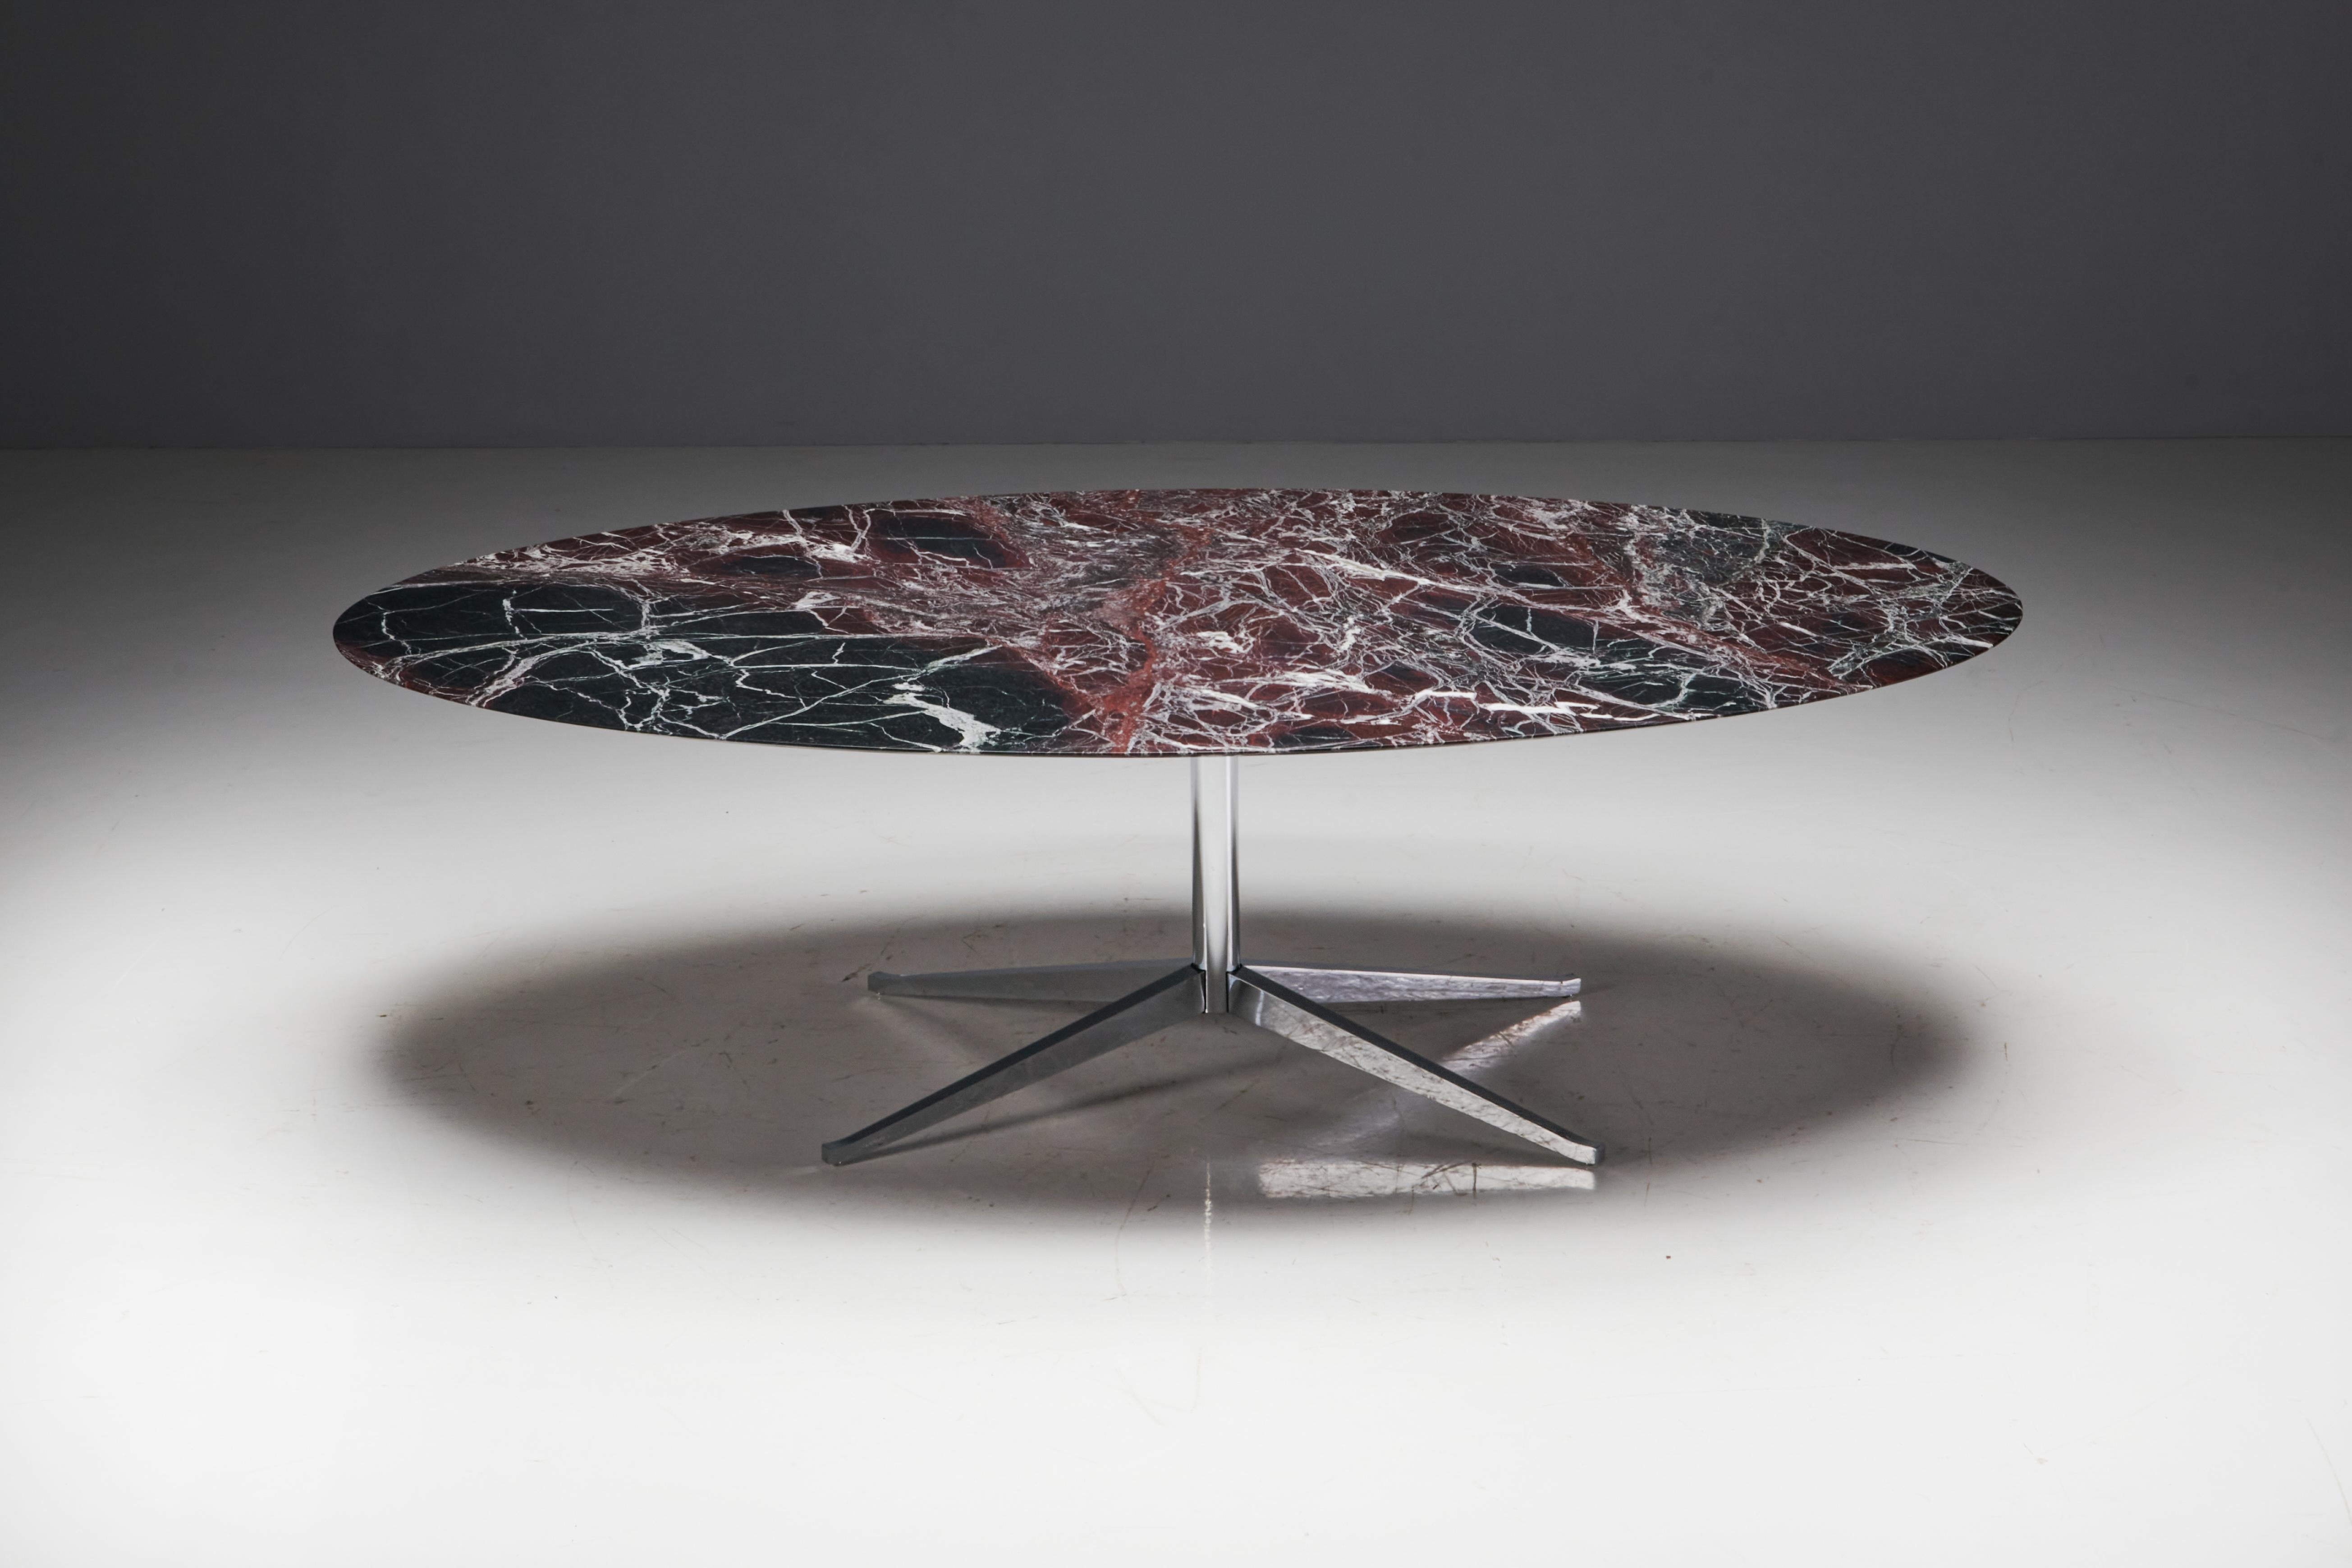 Table de salle à manger ovale en marbre bordeaux de Florence Knoll, fabriquée aux Etats-Unis dans les années 1960. Le plateau, taillé dans un marbre bordeaux massif, repose gracieusement sur une base en acier soutenue par quatre pieds évasés. Le